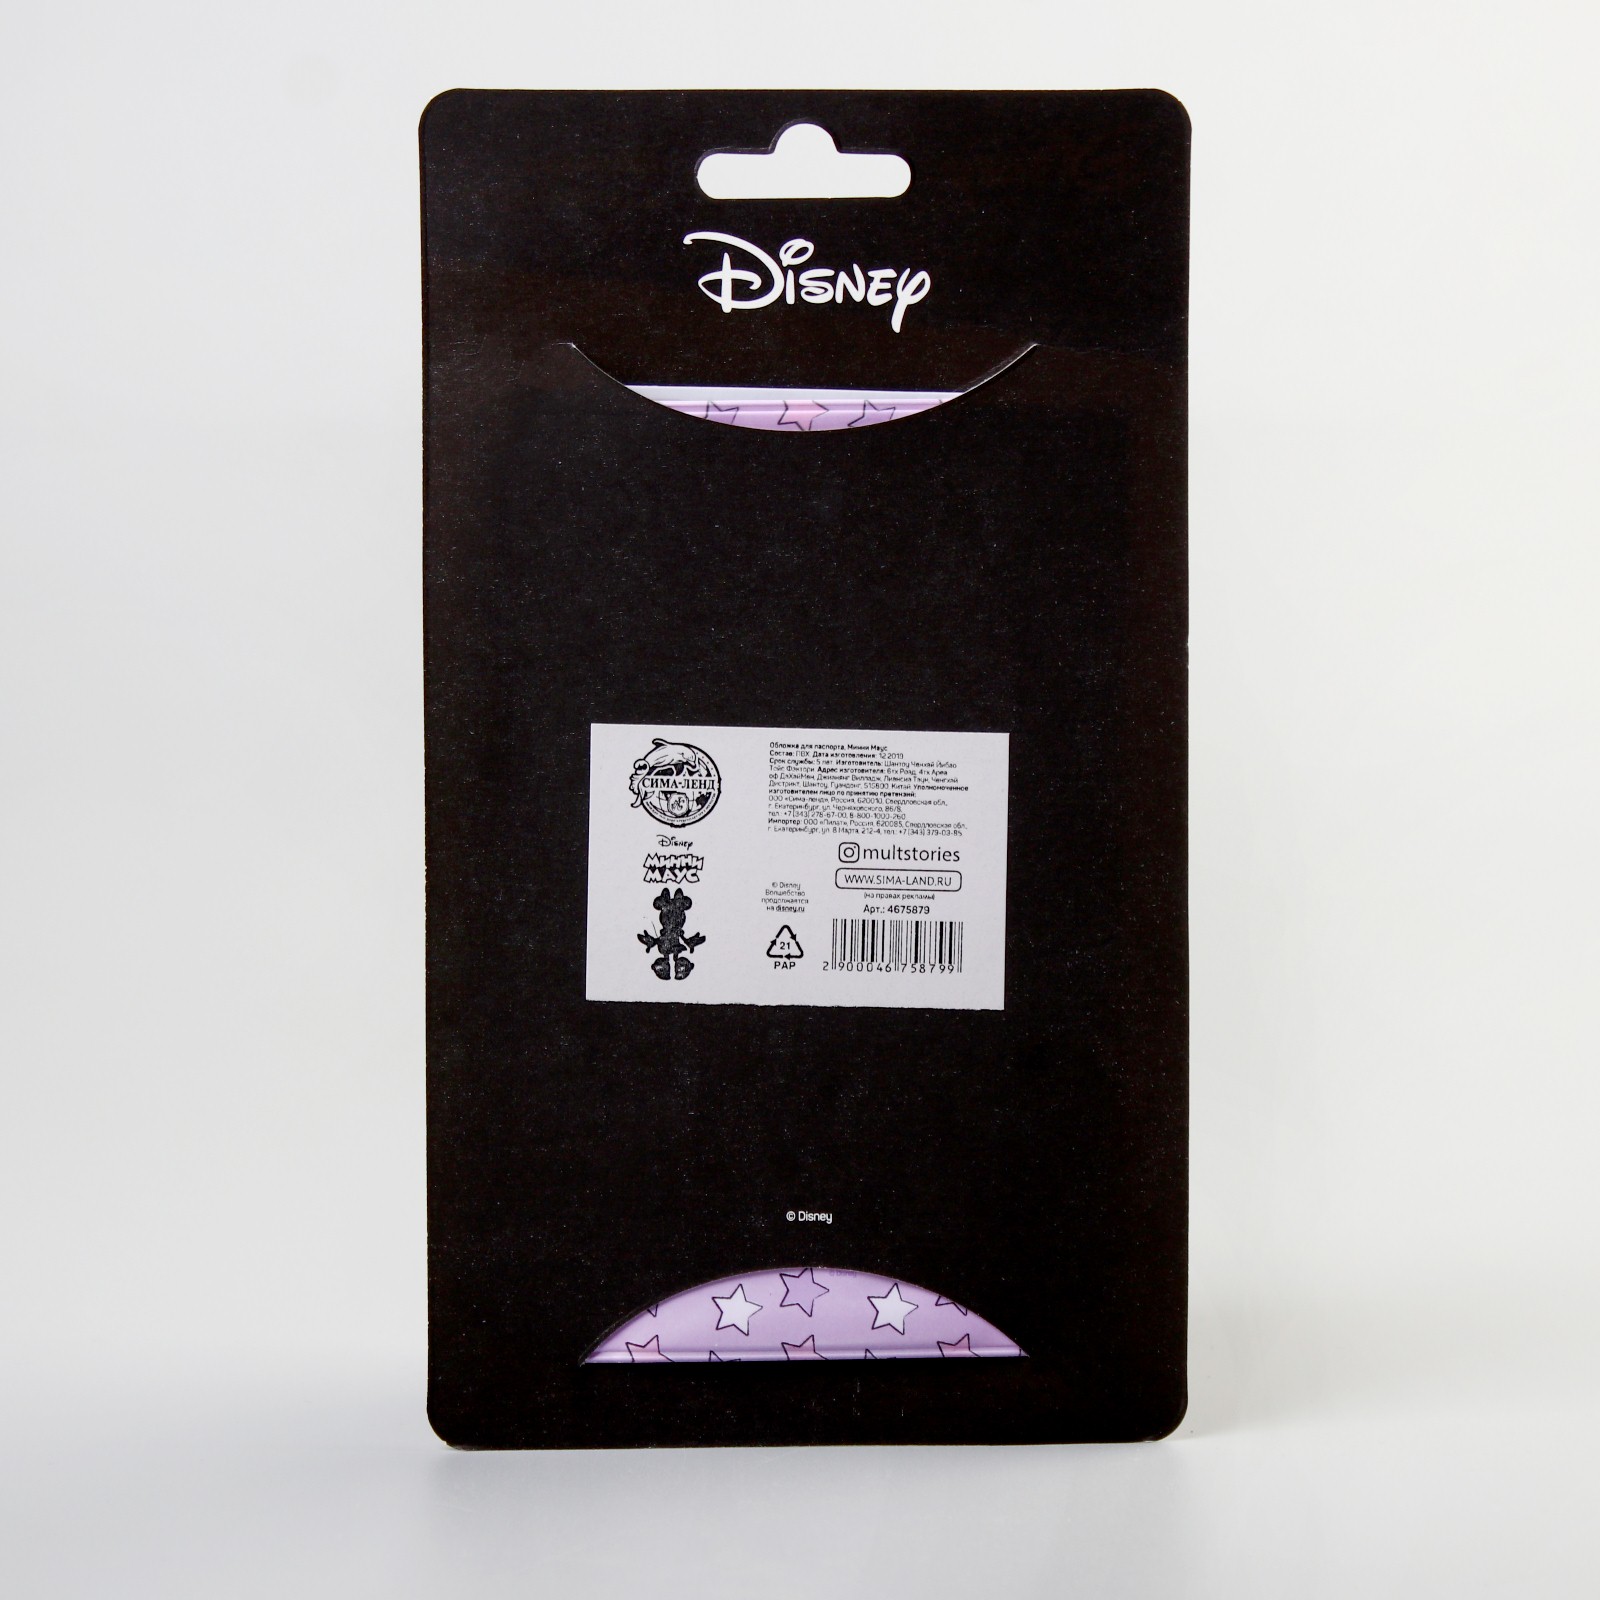 Обложка Disney для паспорта Минни Маус Disney - фото 5